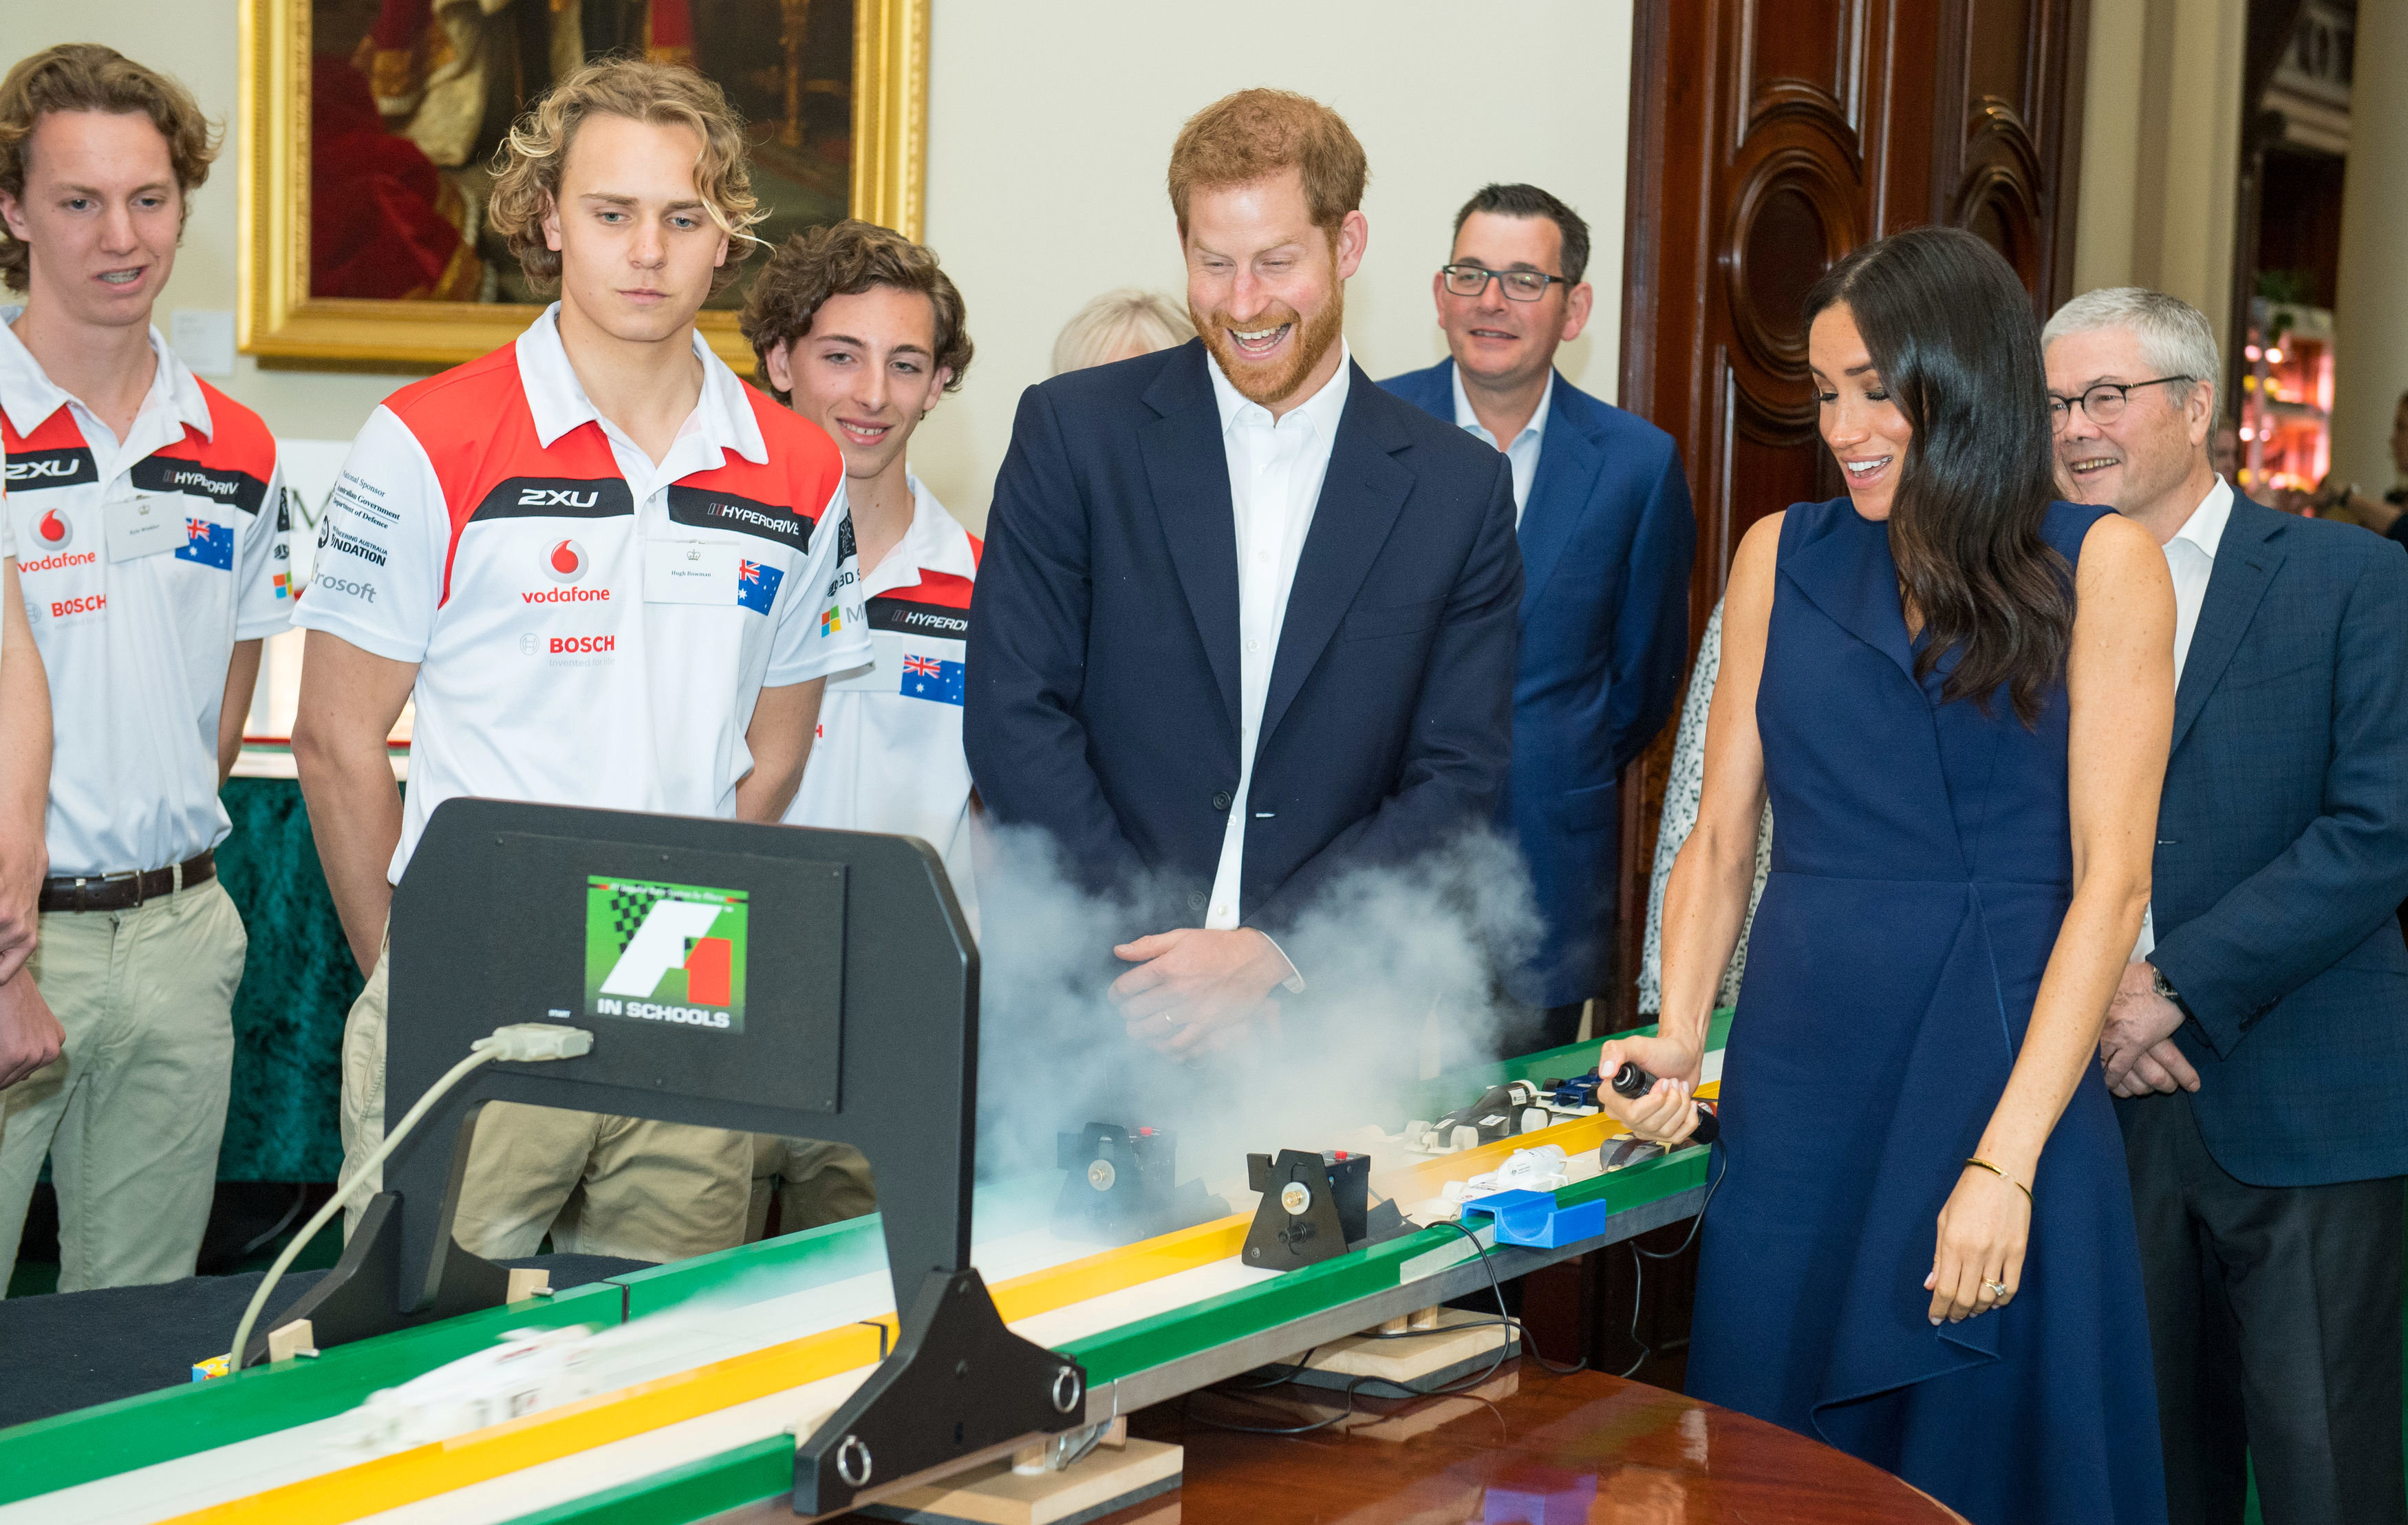 الأمير هارى وزوجته ميجان يشاهدان نموذج لسيارات الفورمولا 1